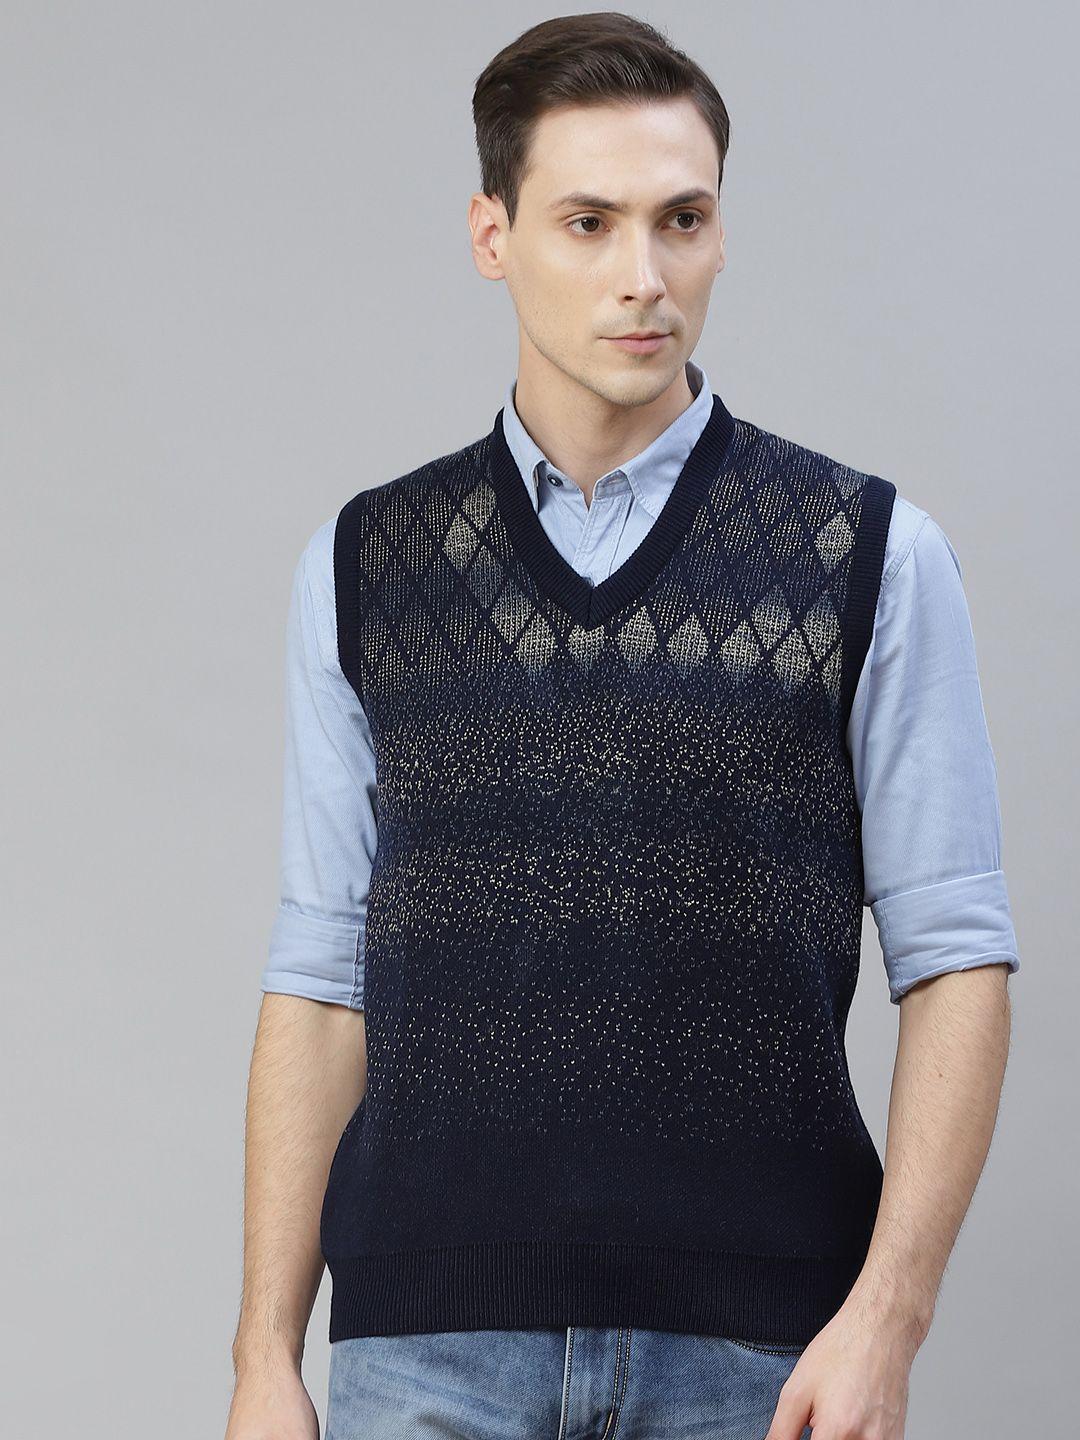 pierre-carlo-men-navy-blue-&-beige-geometric-design-sweater-vest